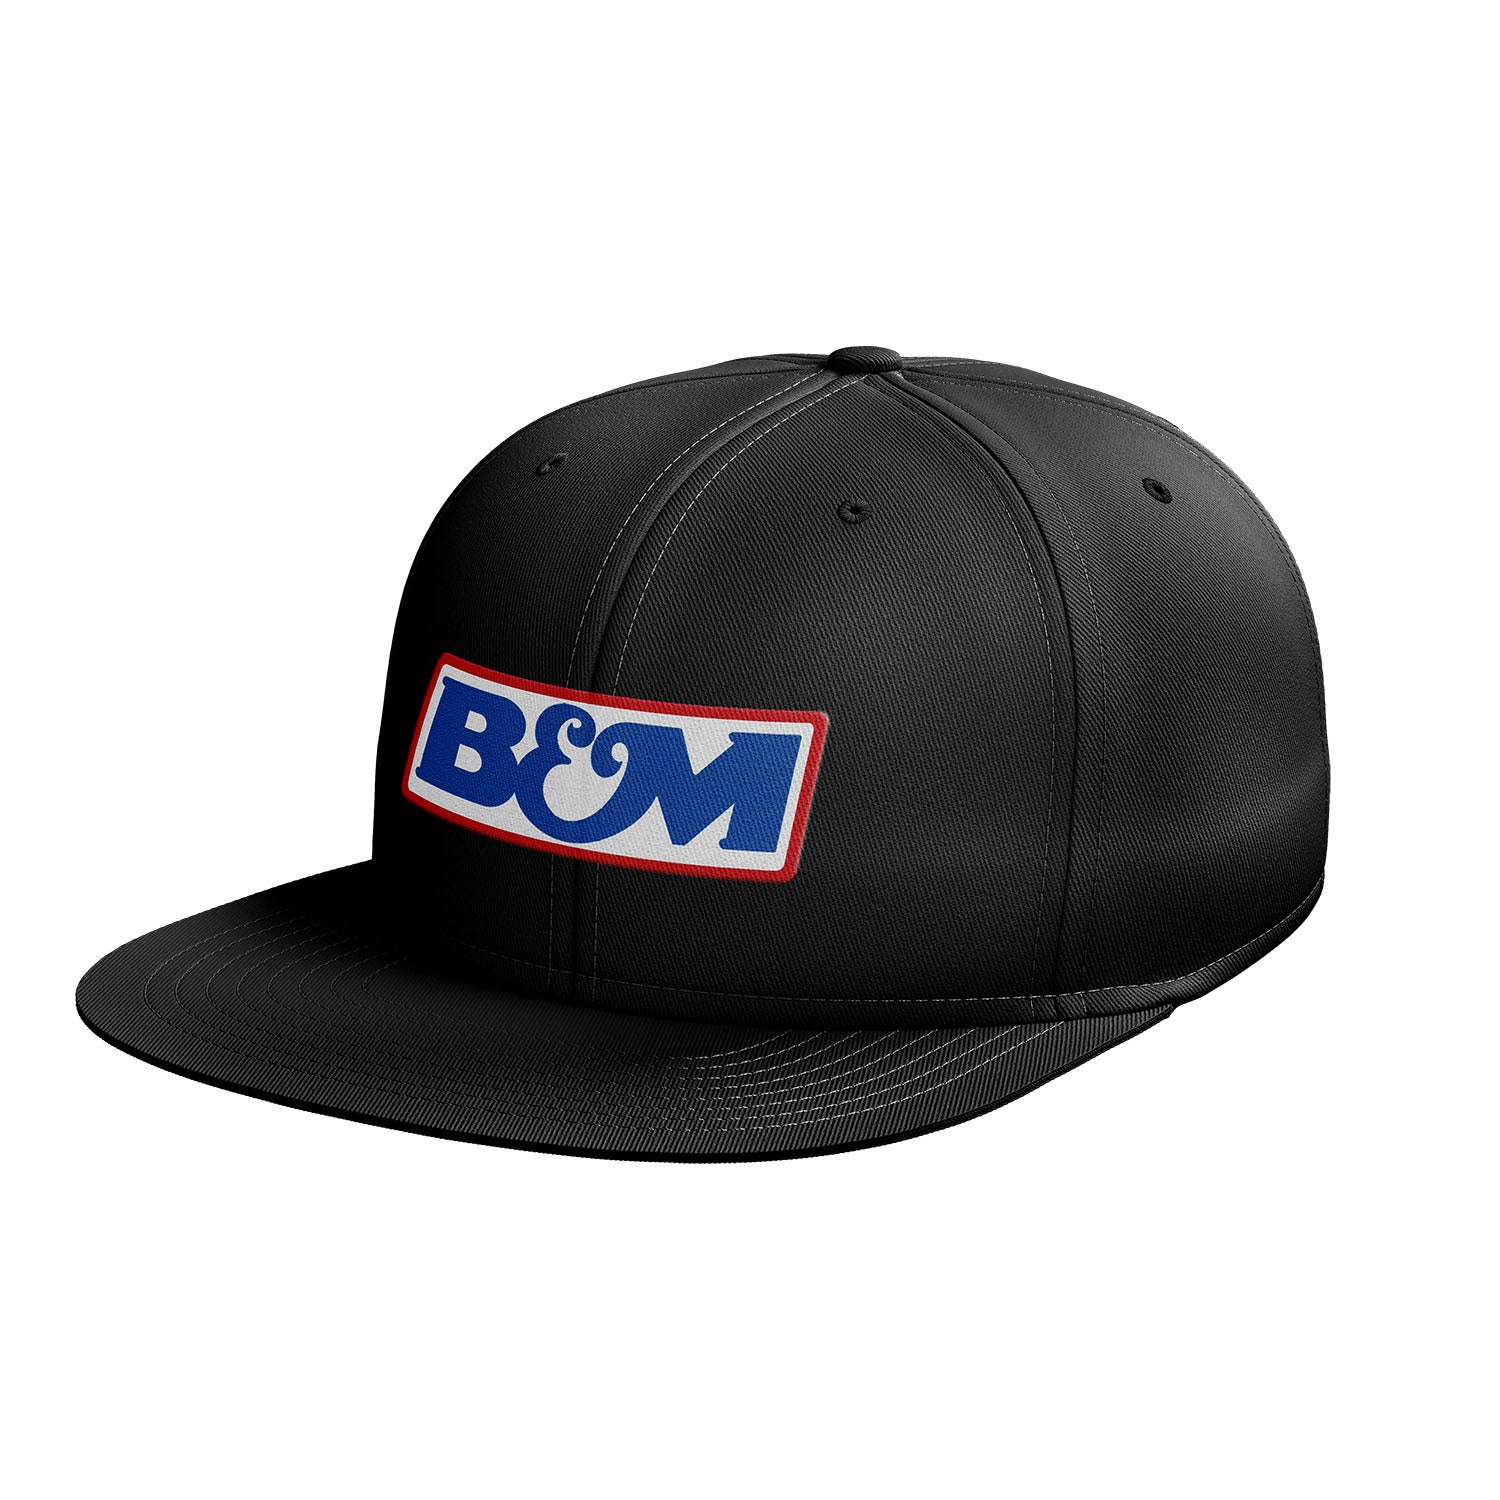 B&M Baseball Cap 669987